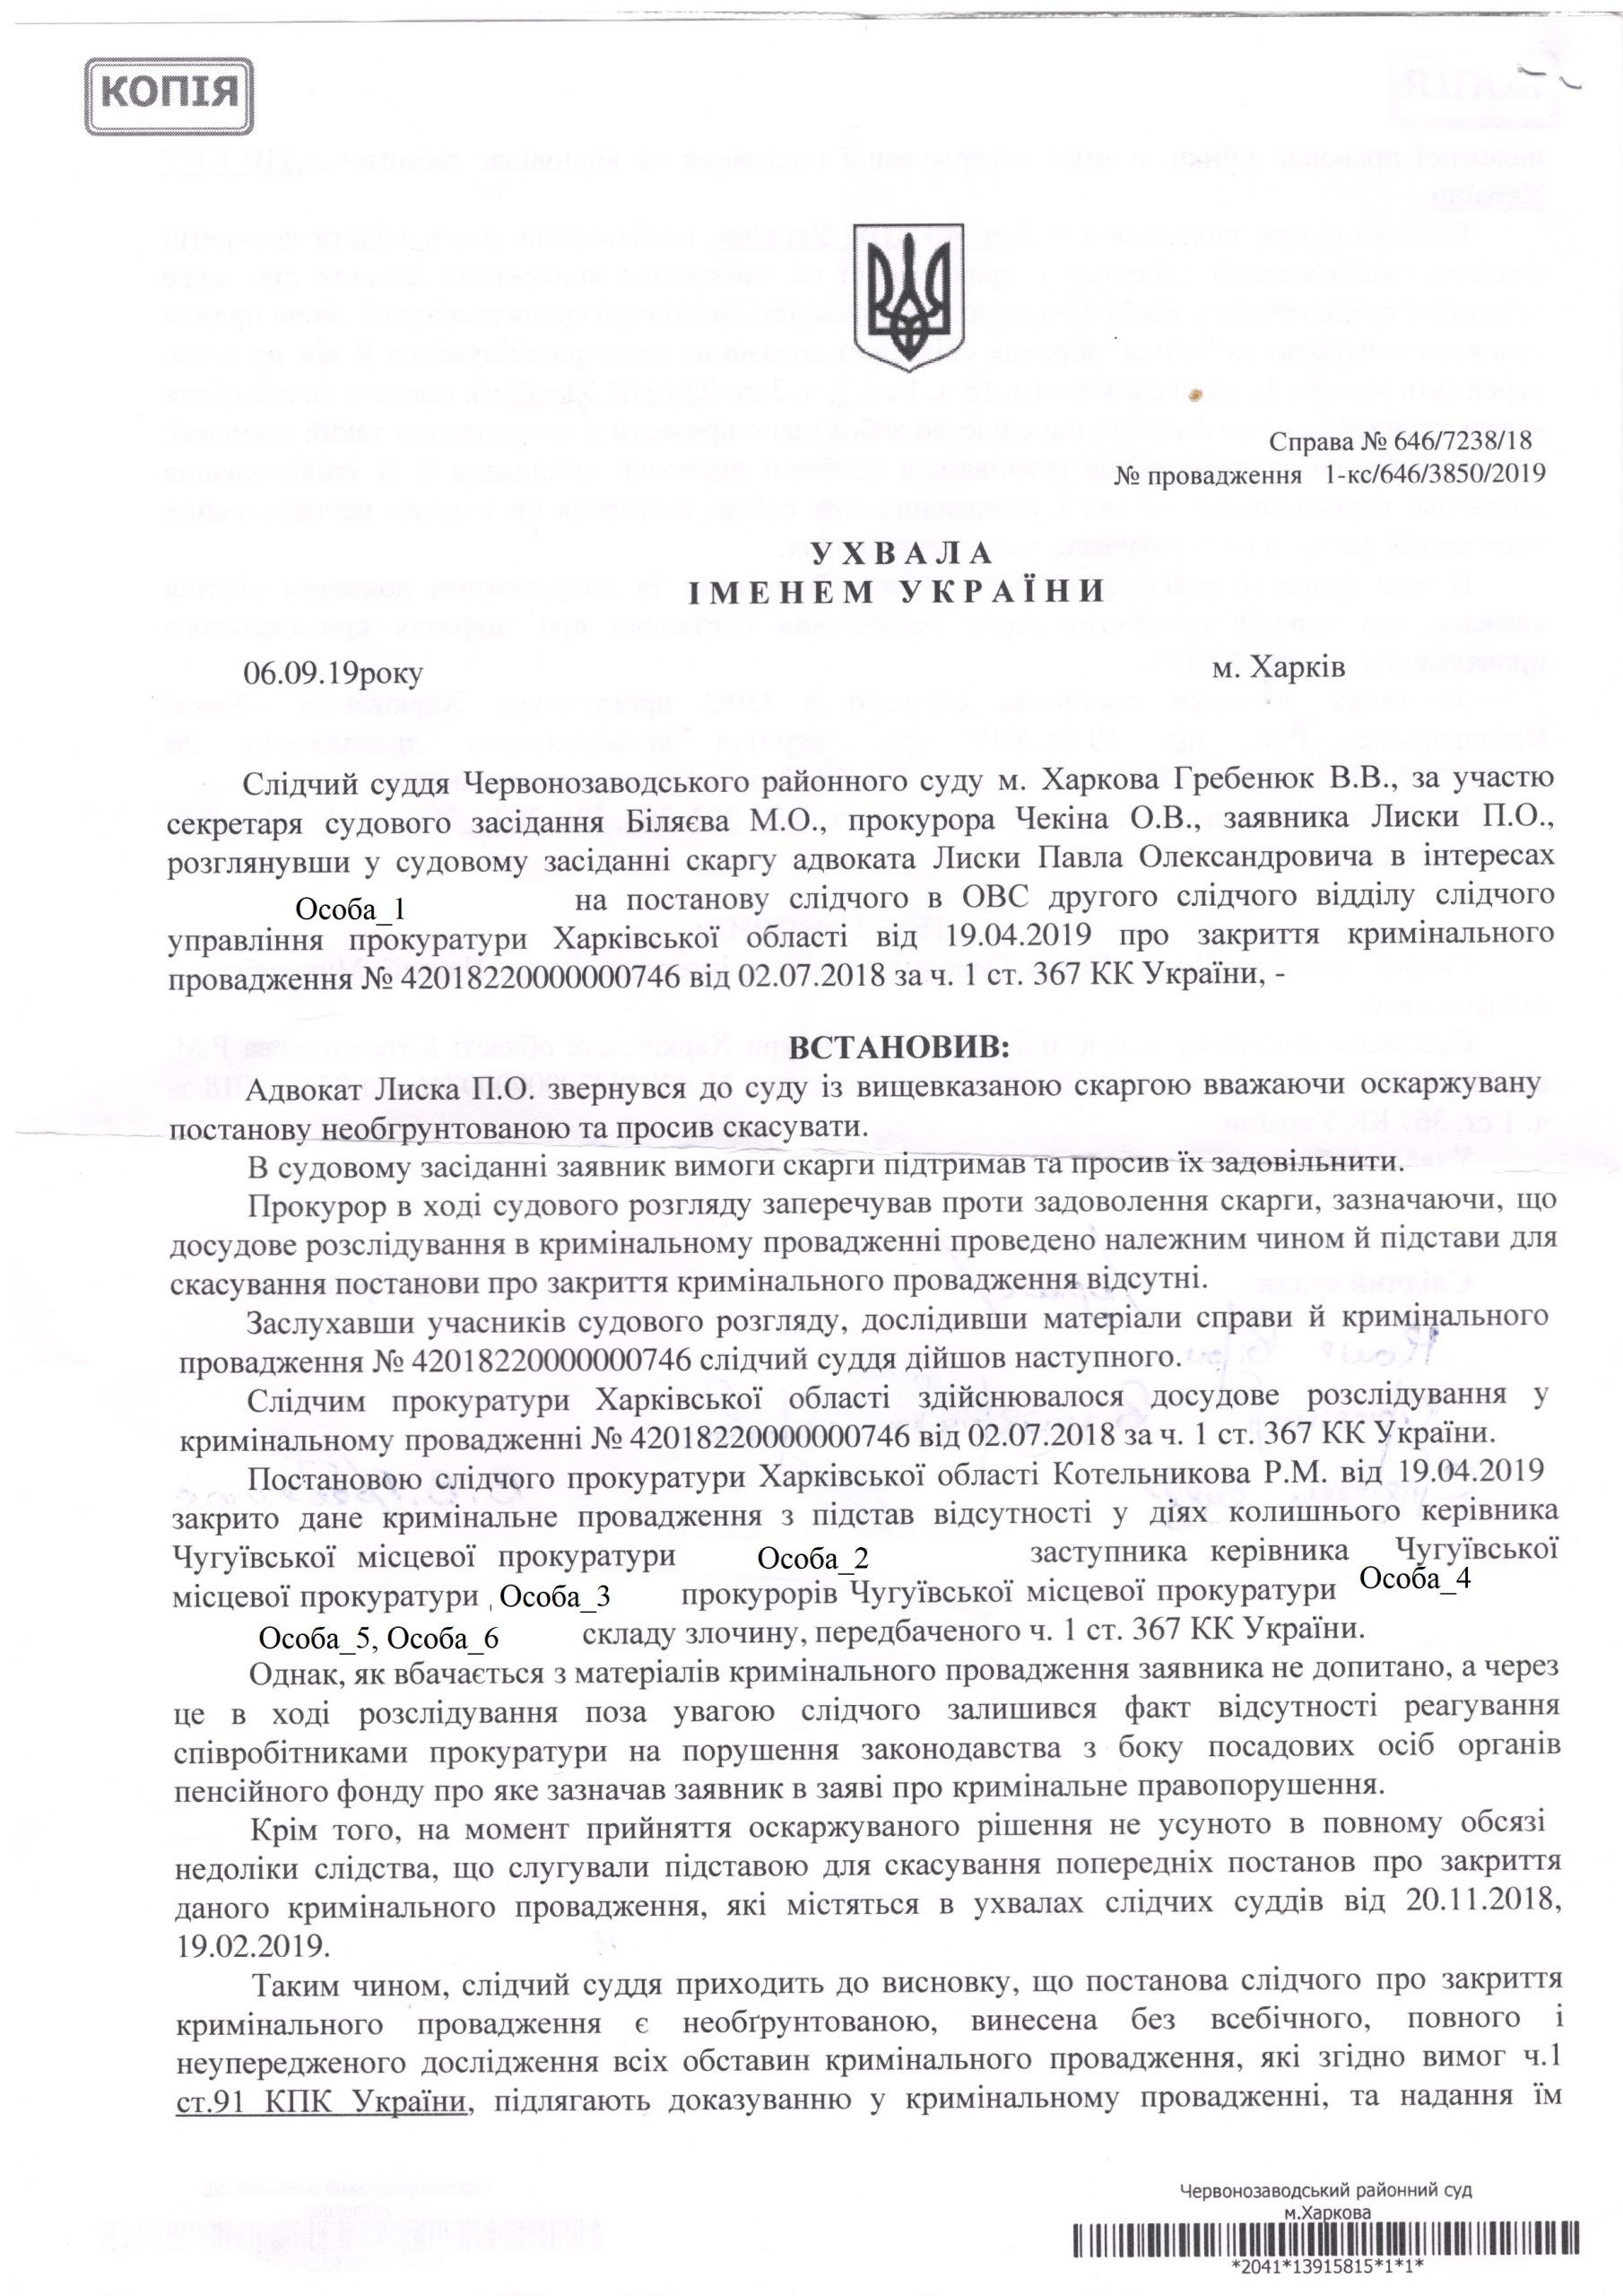 Отменено Постановление о закрытии уголовного производства в результате рассмотрения Жалобы Адвоката, поданной в порядке ст. 303 УПК Украины